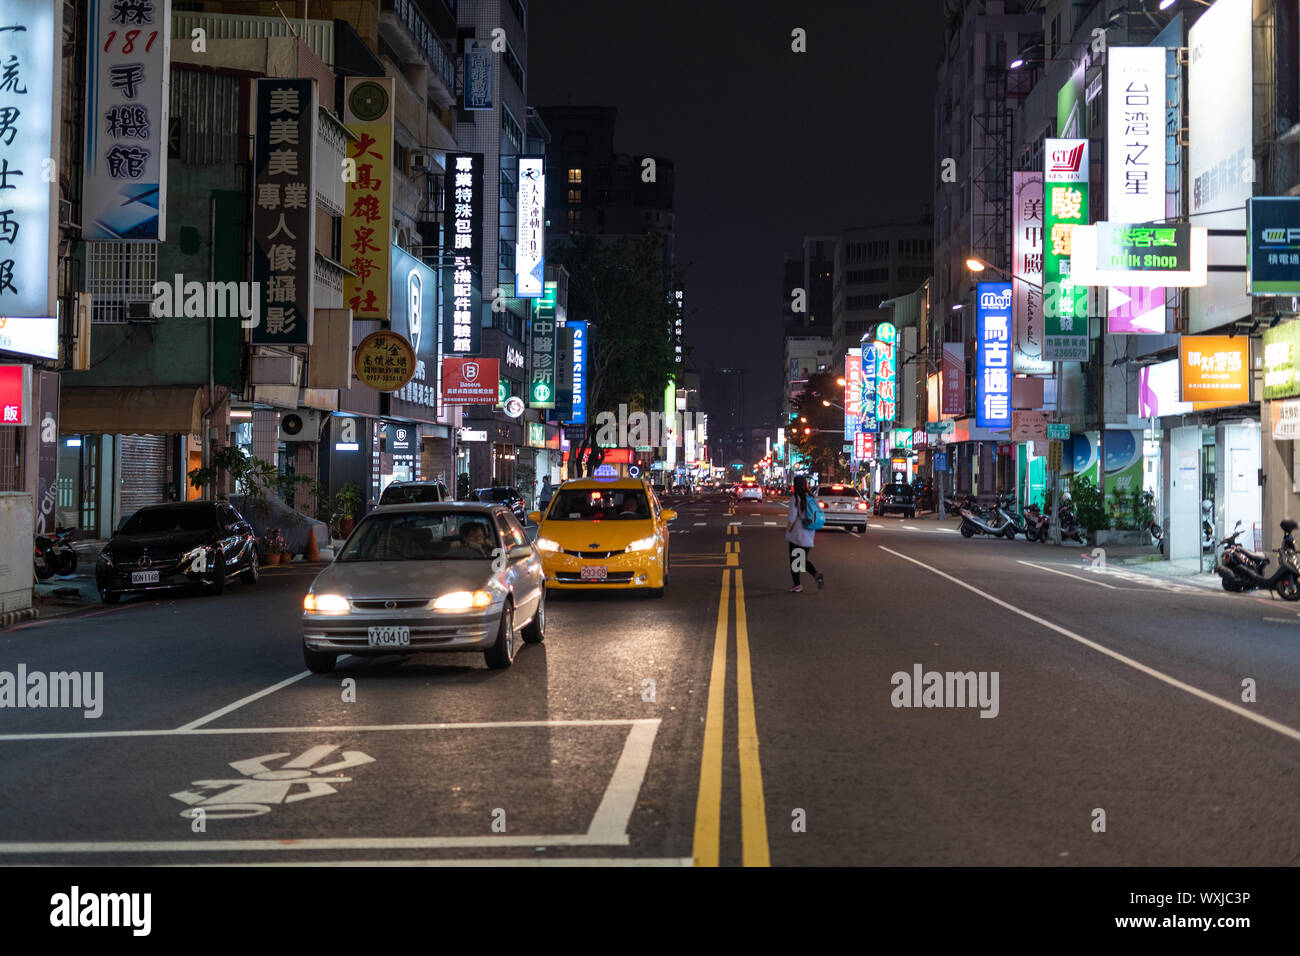 Kaohsiung, Taiwan - 07 April 2019: Verkehr auf Urban Street in der Nacht beleuchtet durch bunte Werbung Leuchtreklame mit chinesischen Schriftzeichen. Stockfoto